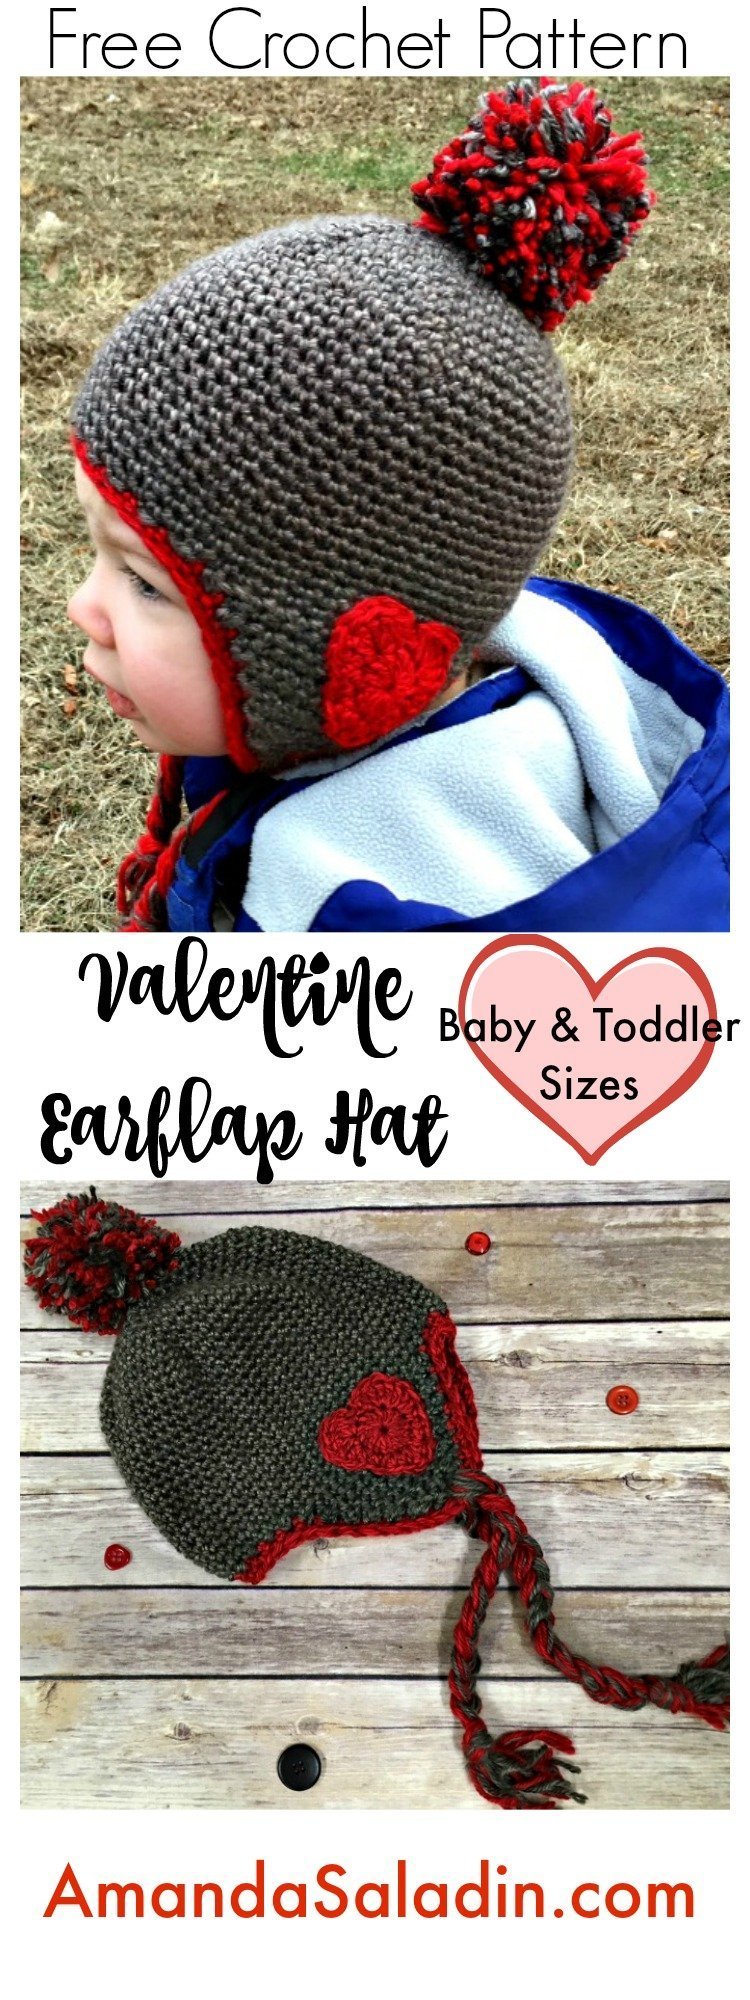 Free Crochet Pattern - Valentine Earflap Hat